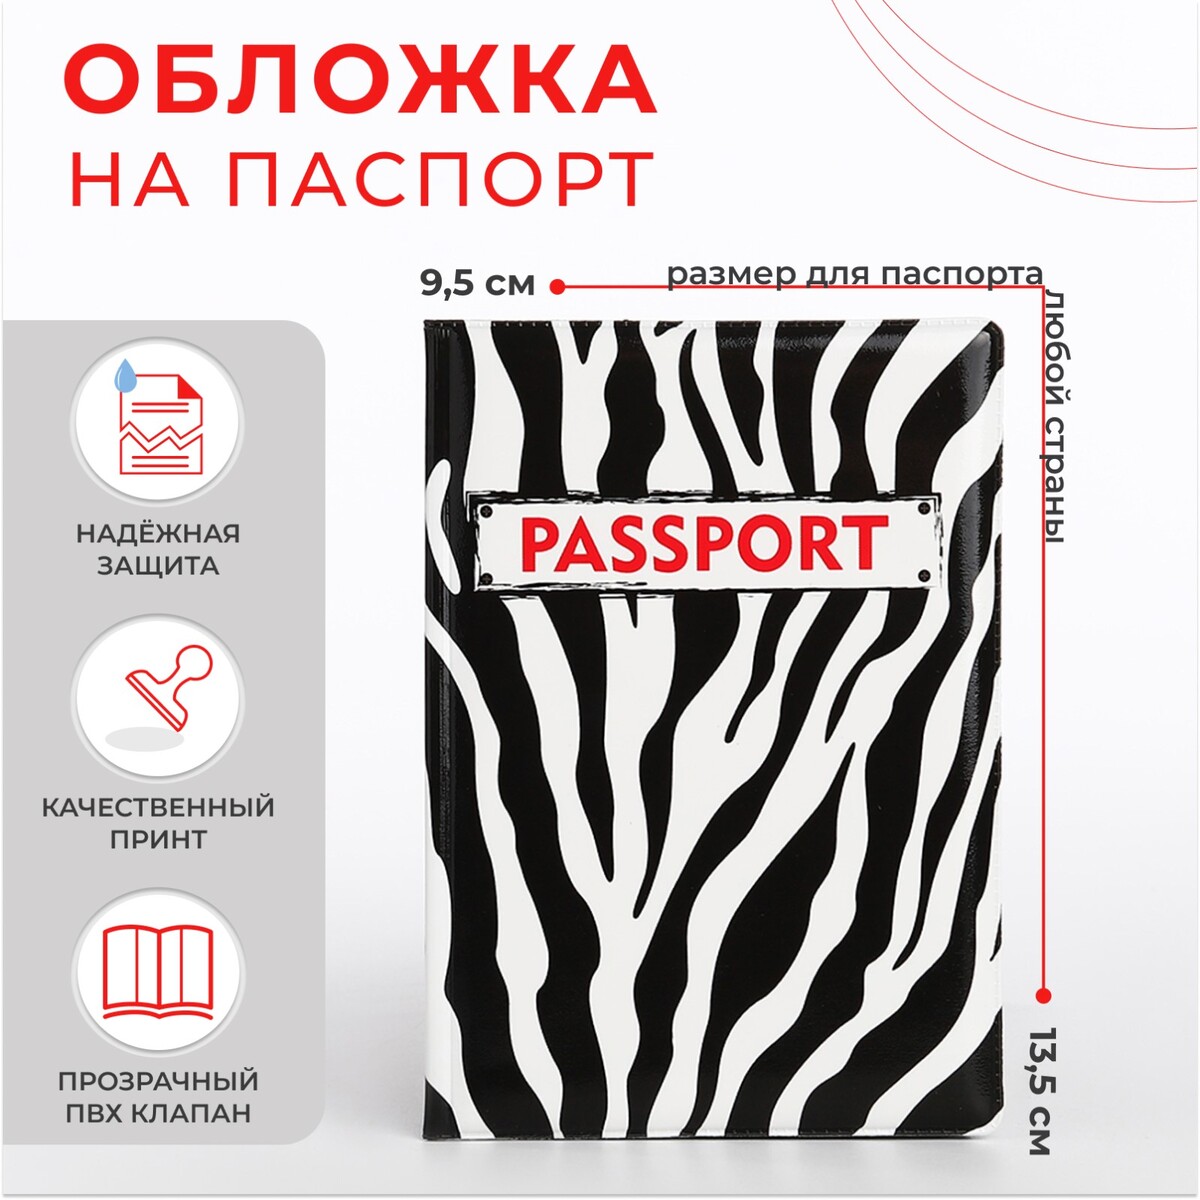 Обложка для паспорта, цвет черный/белый обложка для паспорта маяк анива